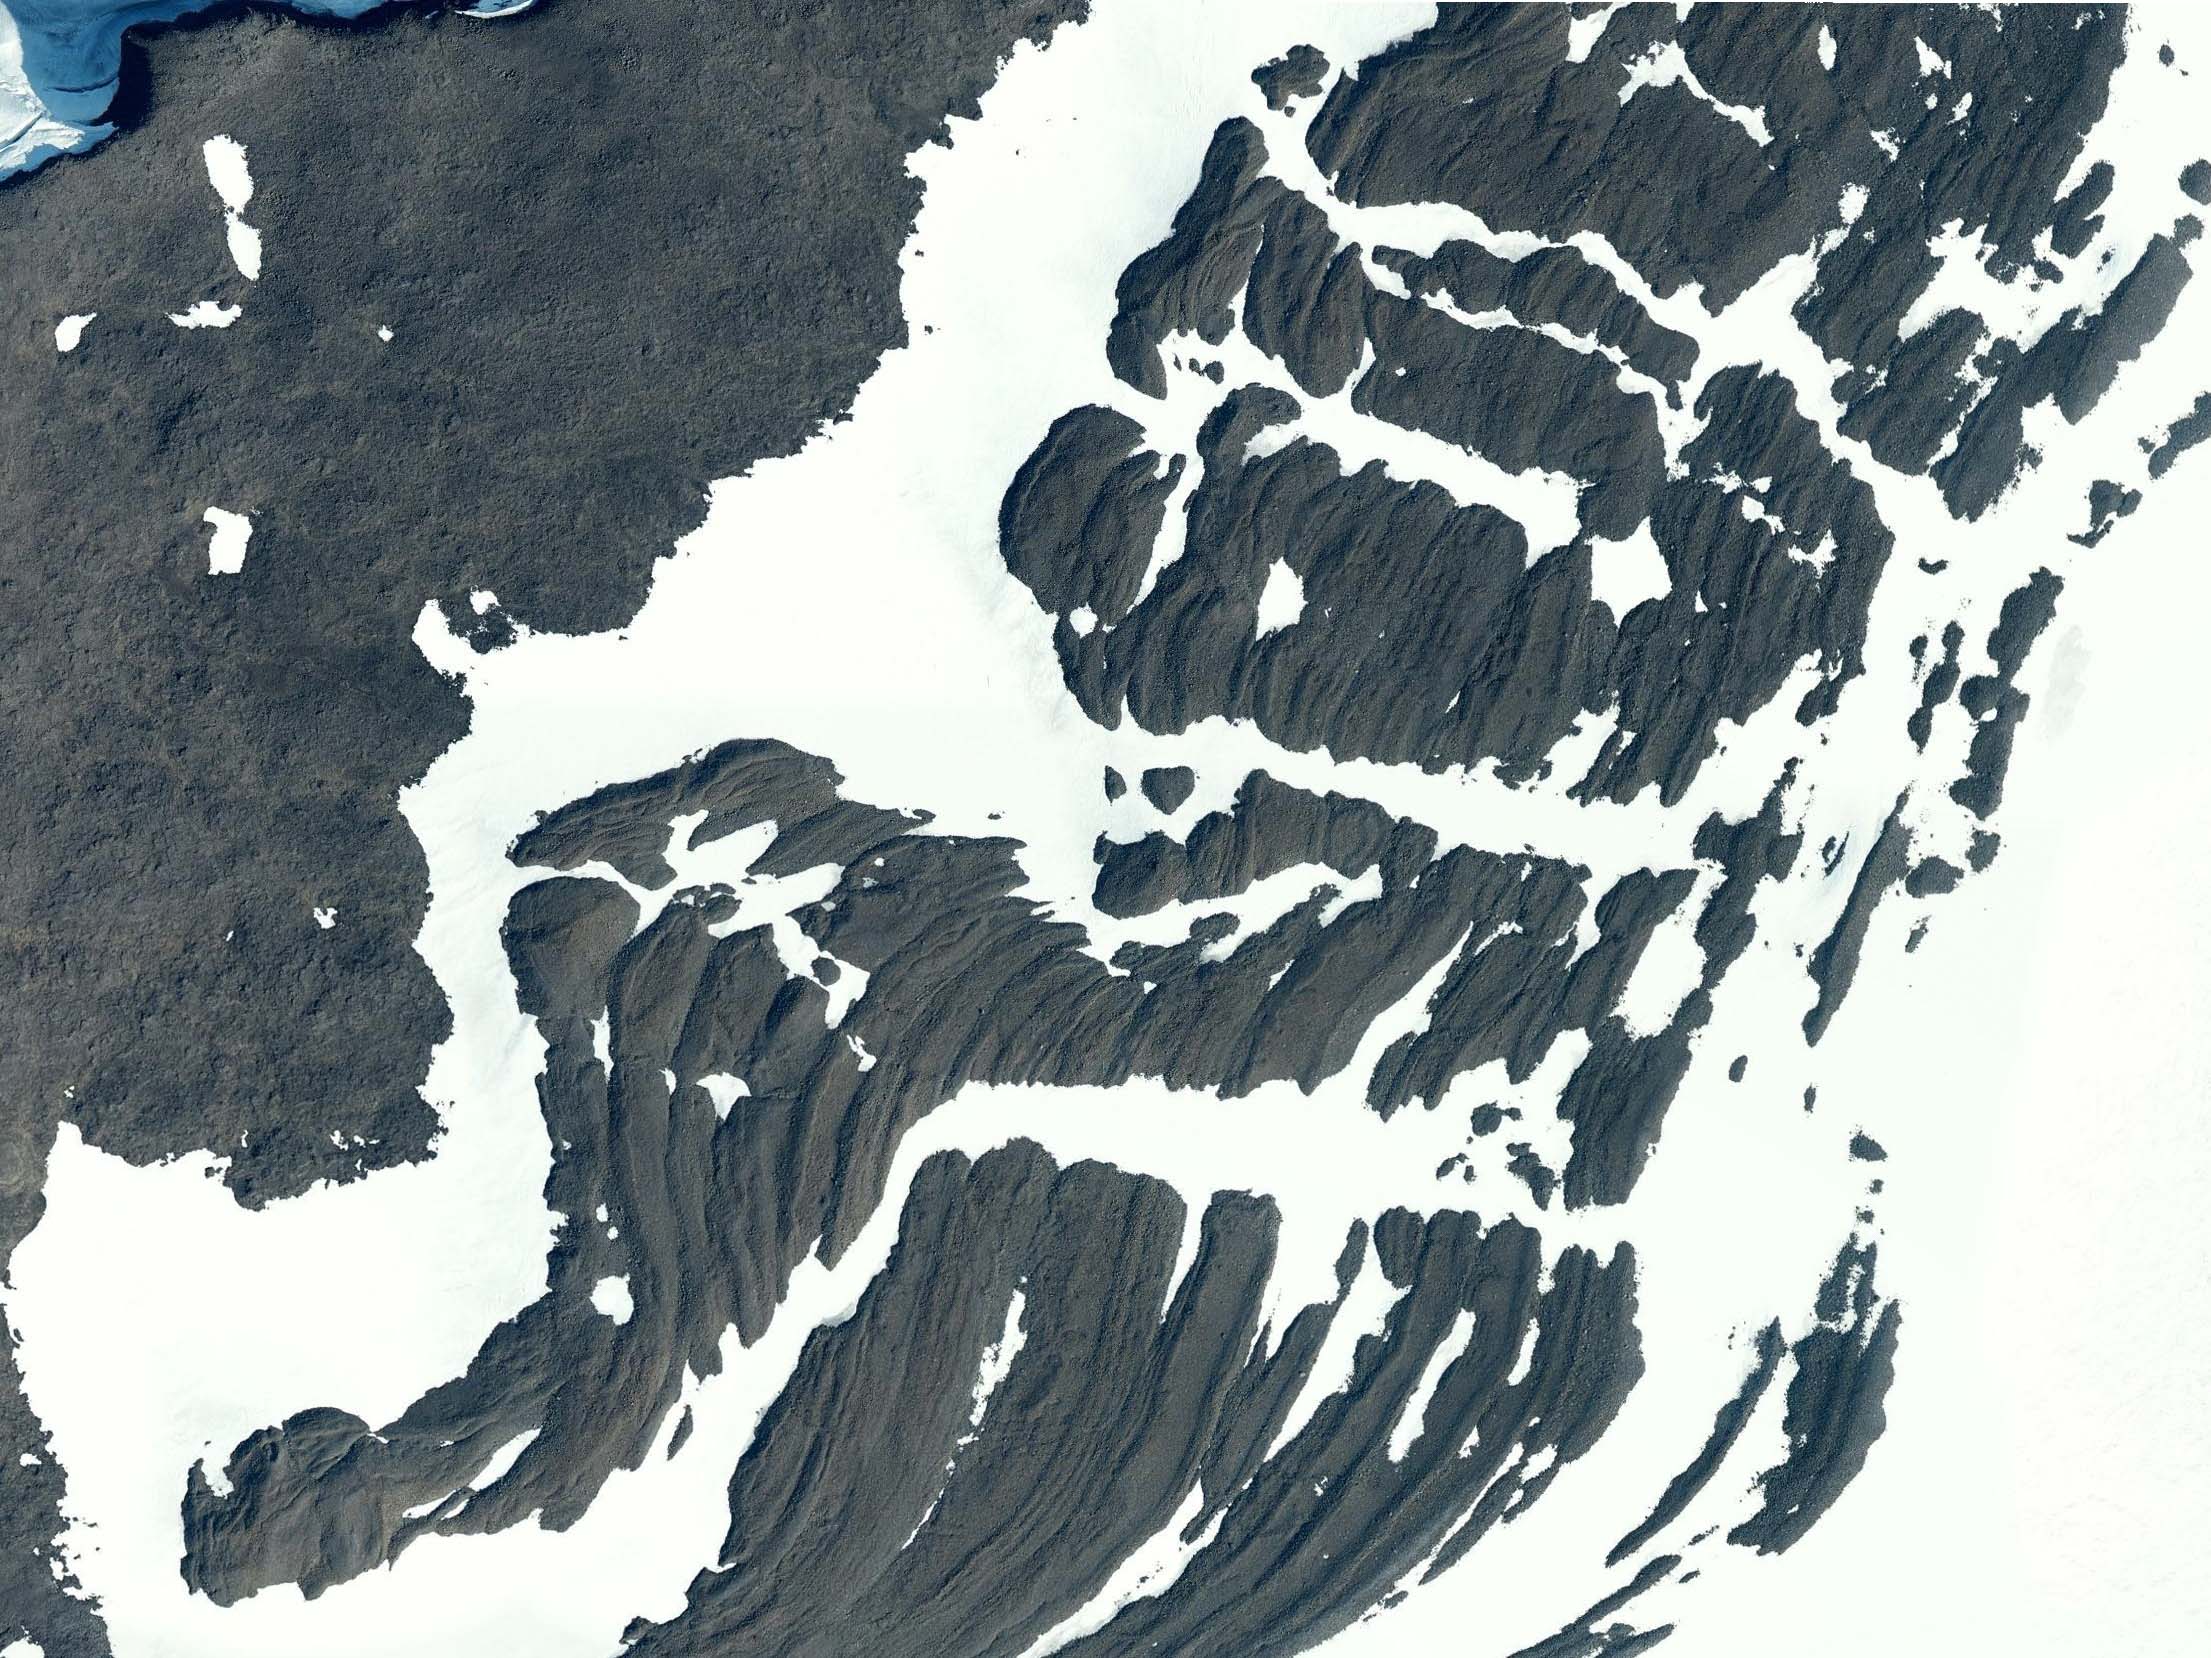 Luchtfoto uit 2017 van de gecontroleerde morenes, die als parallelle ruggen langs de ijskap liggen.